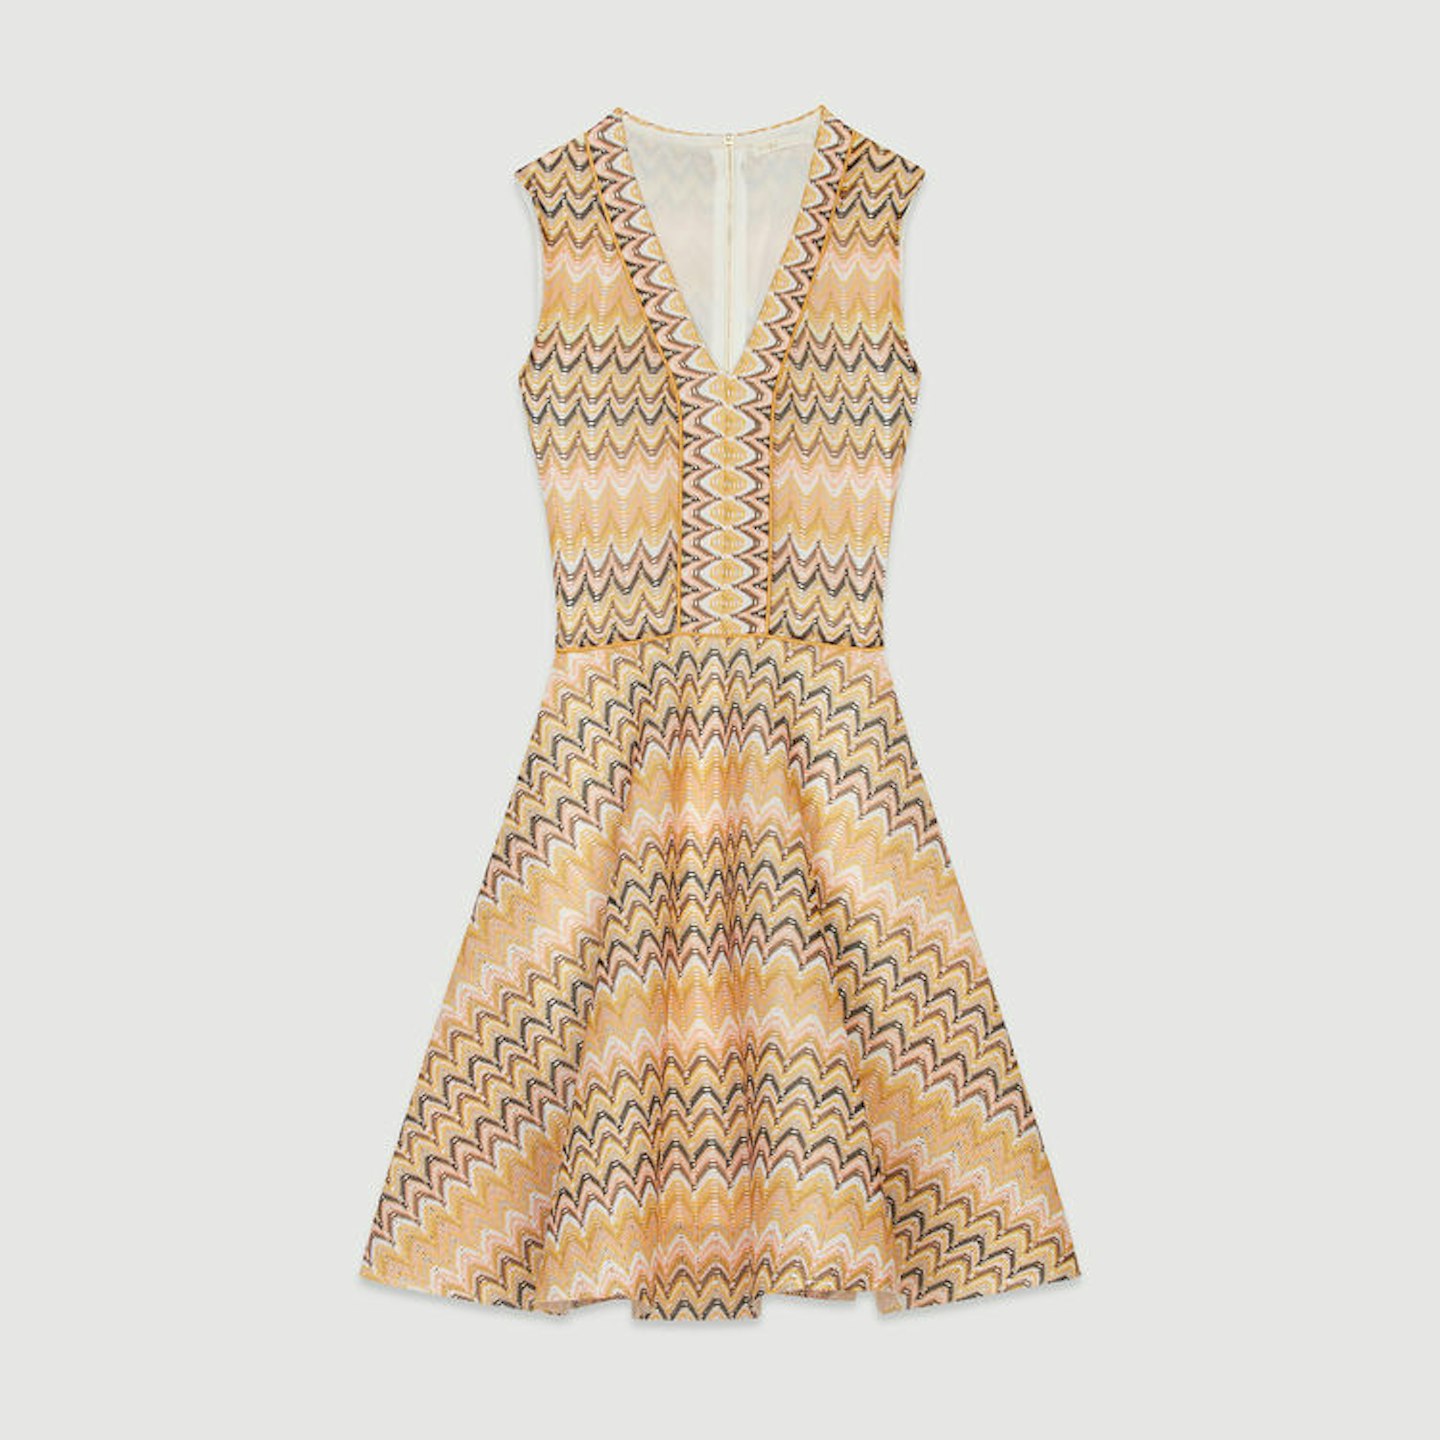 Striped Knit Skater Dress, £269